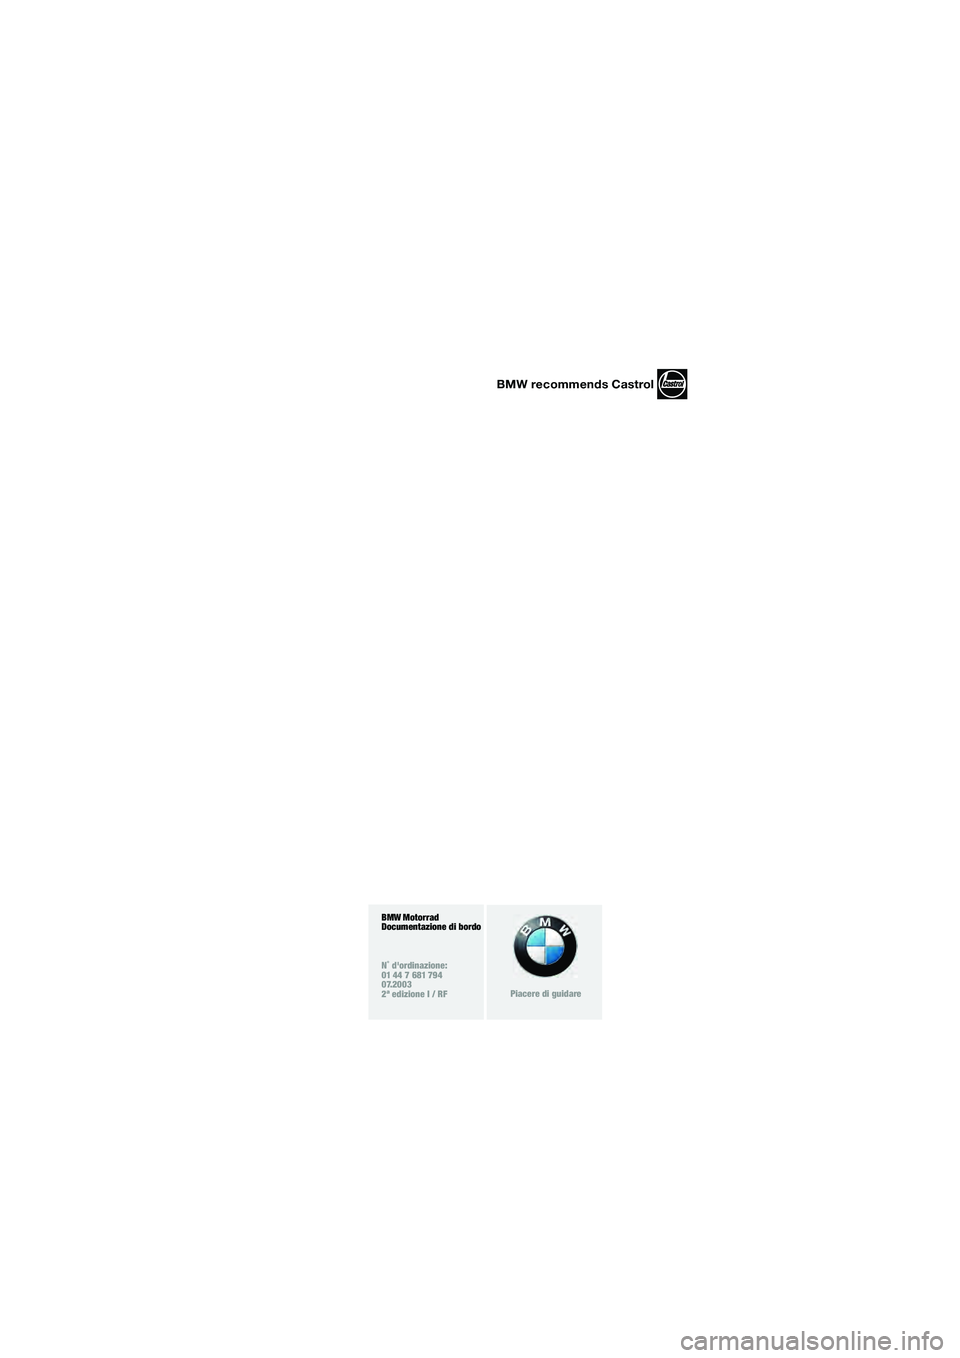 BMW MOTORRAD K 1200 GT 2002  Libretto di uso e manutenzione (in Italian) 1
BMW Motorrad
Documentazione di bordo
N˚ dordinazione:
01 44 7 681 794
07.2003
2ª edizione I / RF
Piacere di guidare
BMW recommends Castrol
10k41rui2.fm  Seite 3  Mittwoch, 6. August 2003  1:09 13